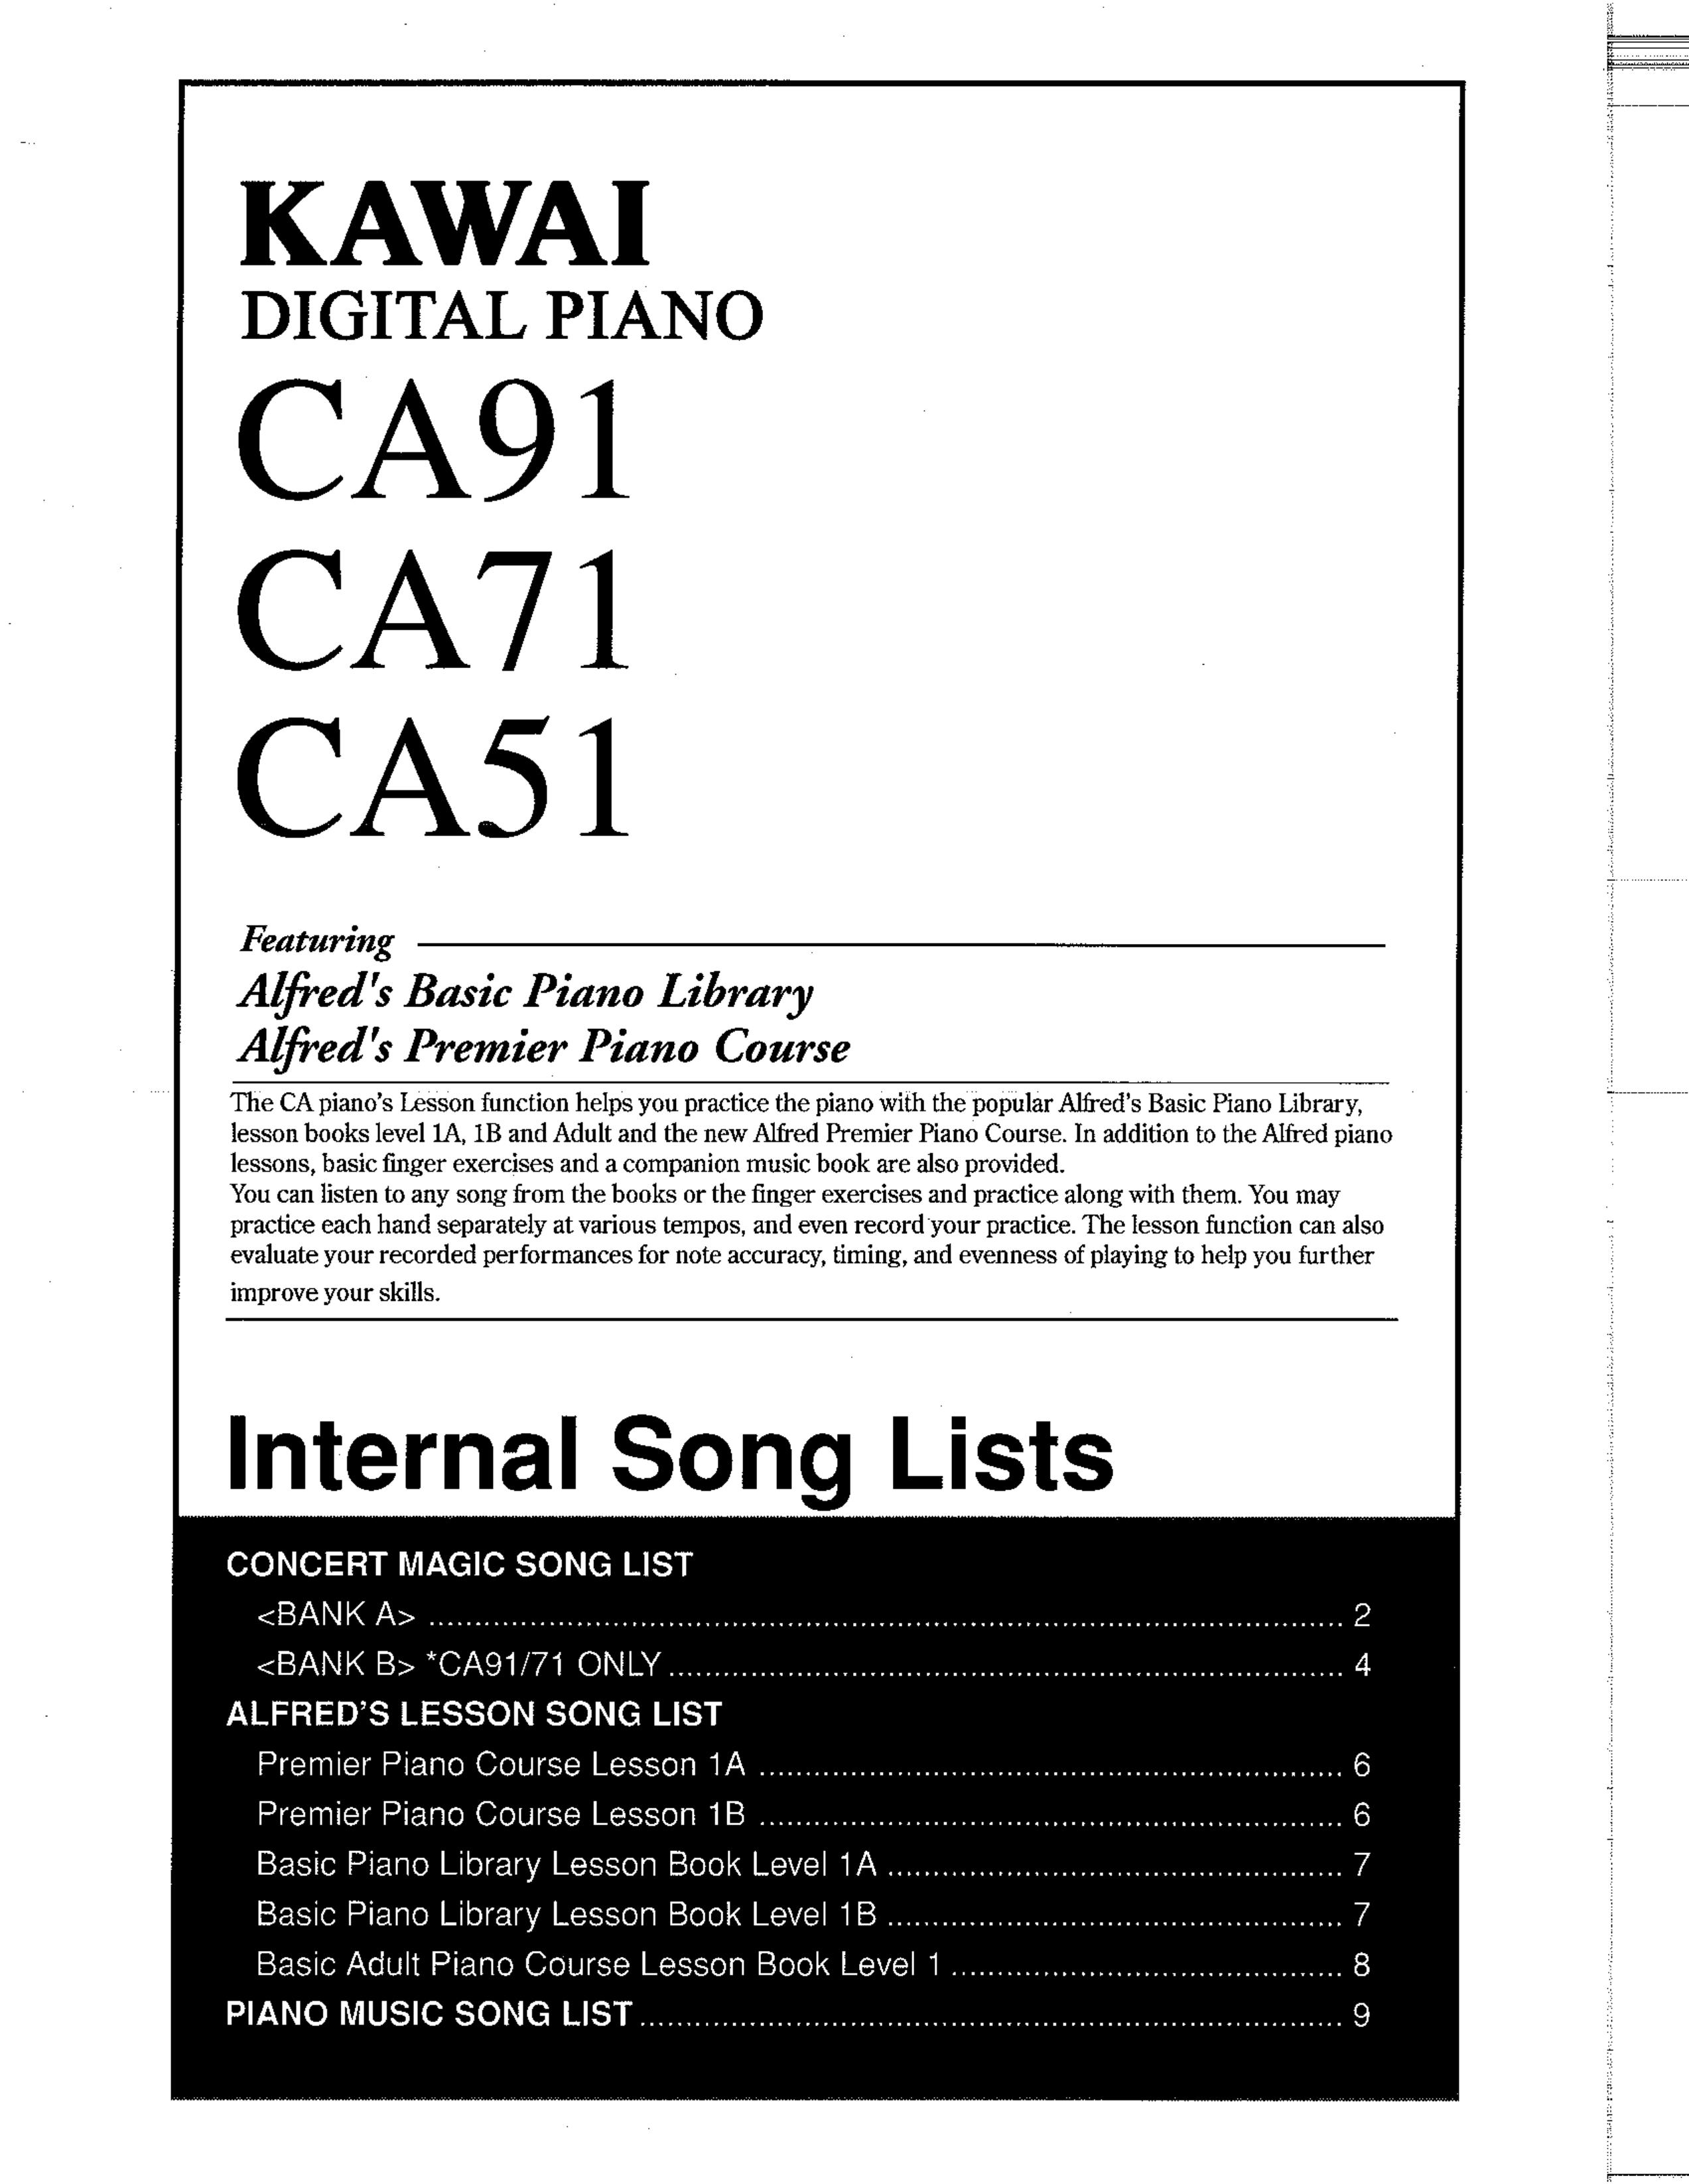 Kawai CA91 Electronic Keyboard User Manual